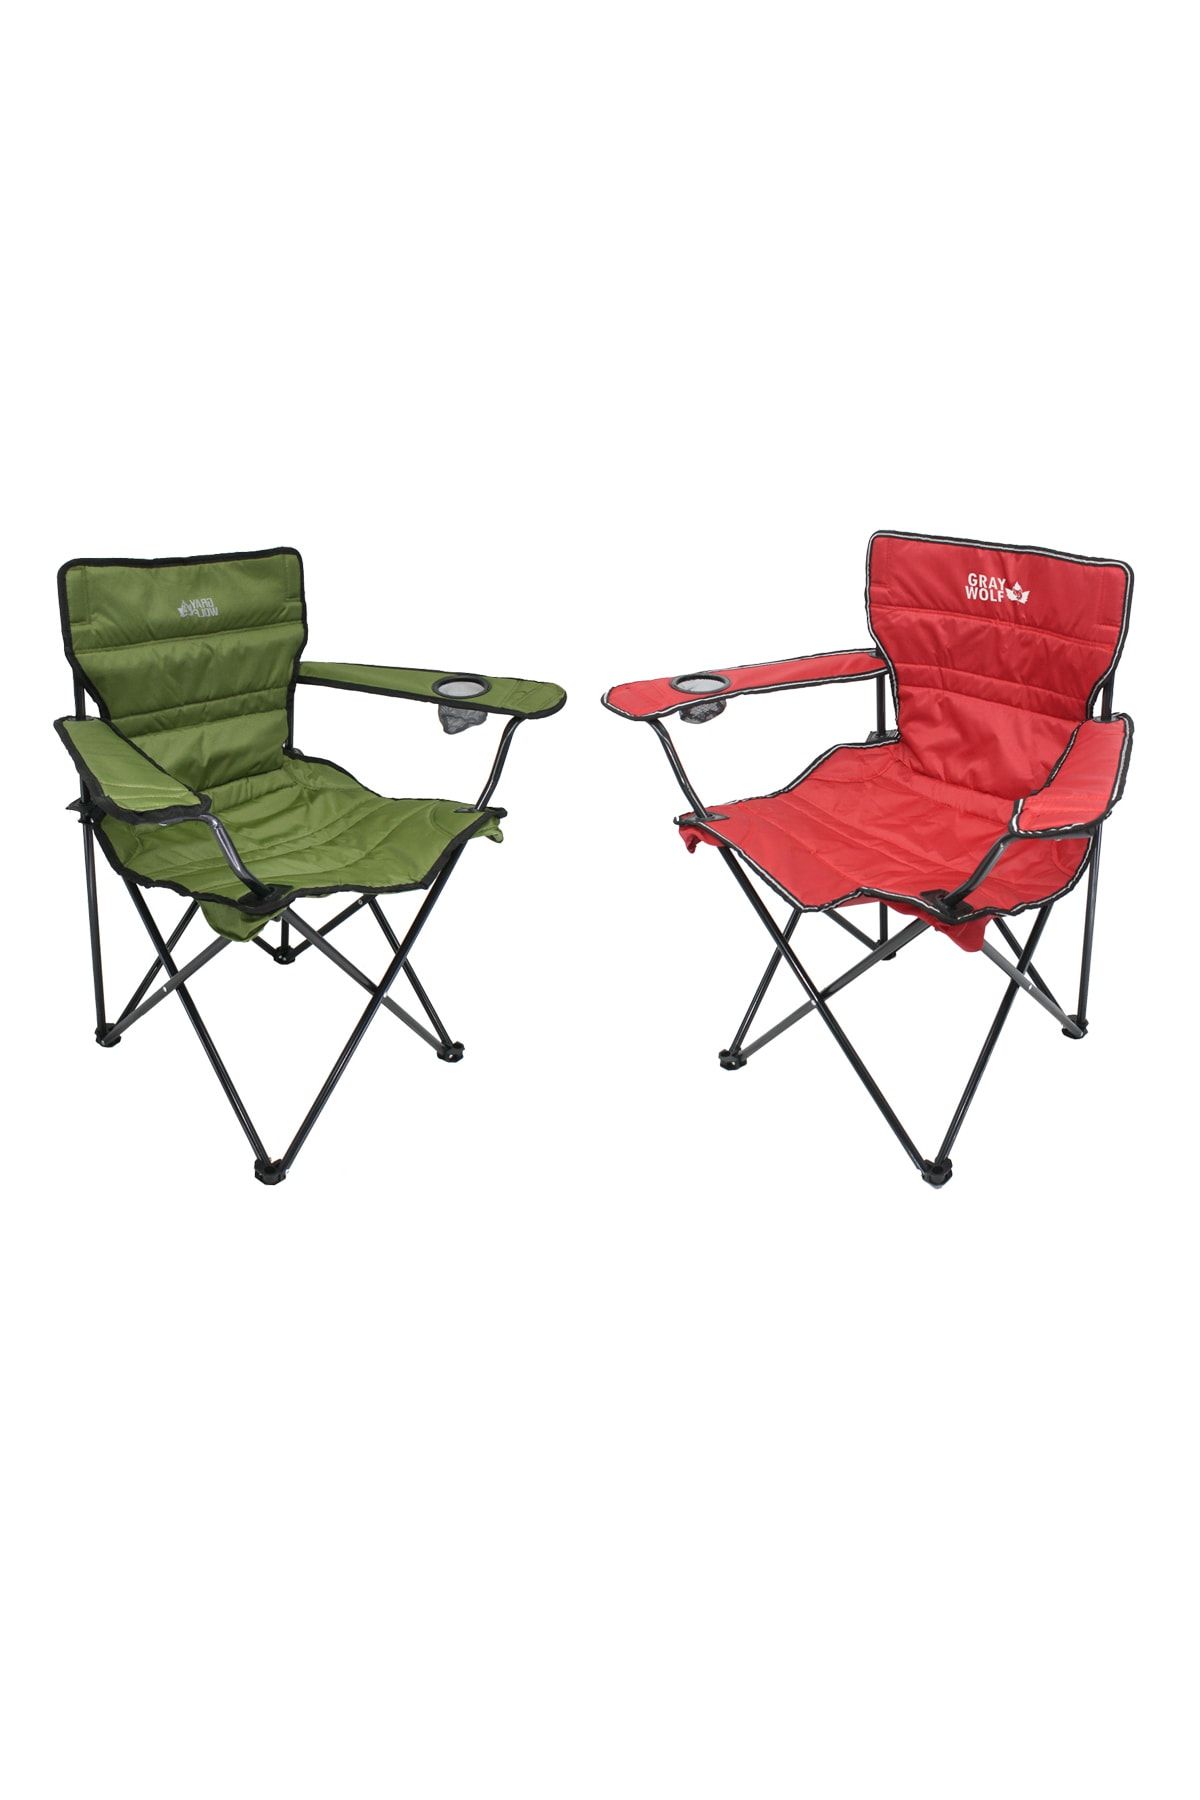 GRAY WOLF Quatro Katlanır Lüks Kamp Sandalyesi - 2 Adet (yeşil - Kırmızı)